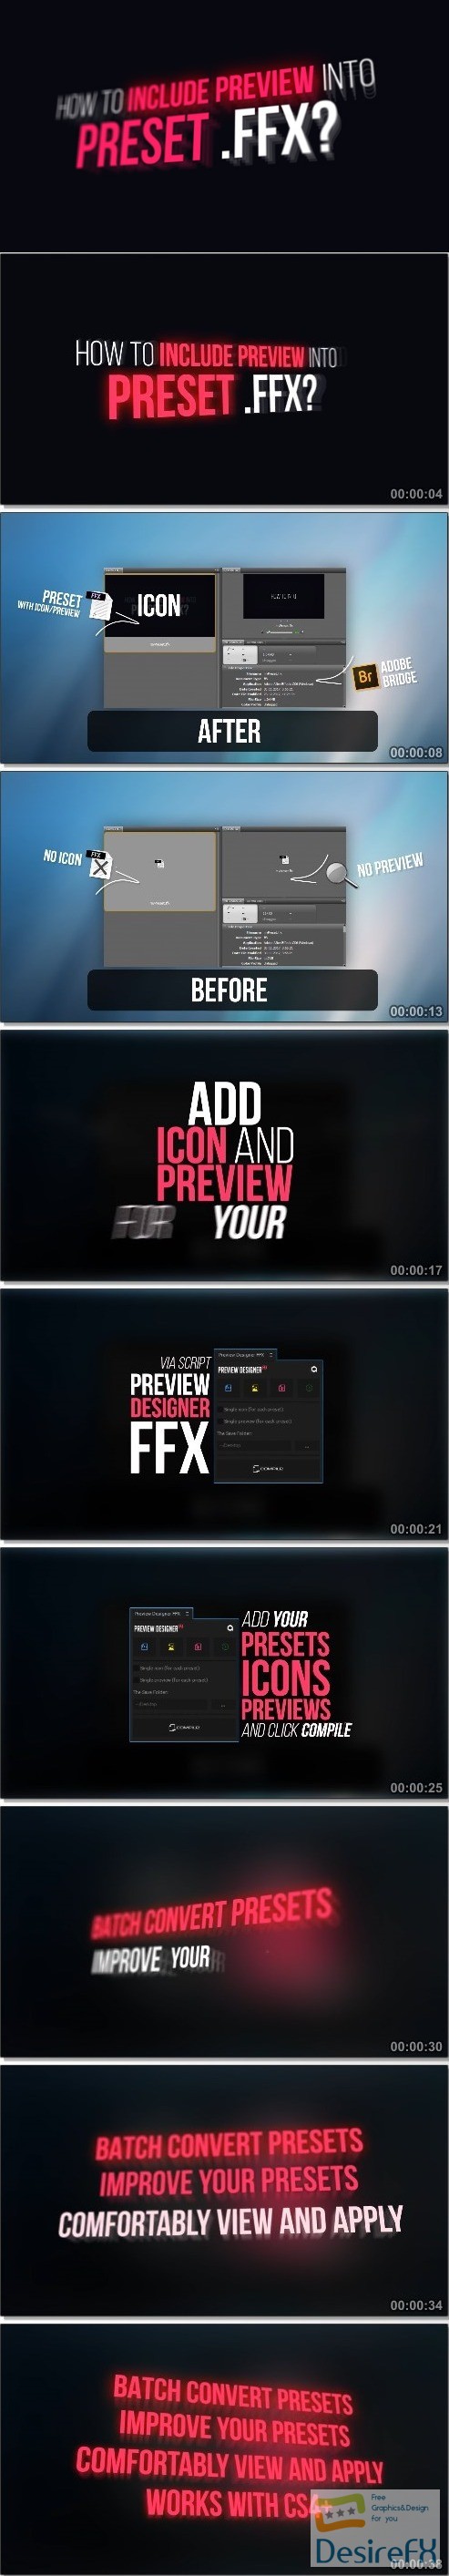 Videohive Preview Designer FFX 21252183